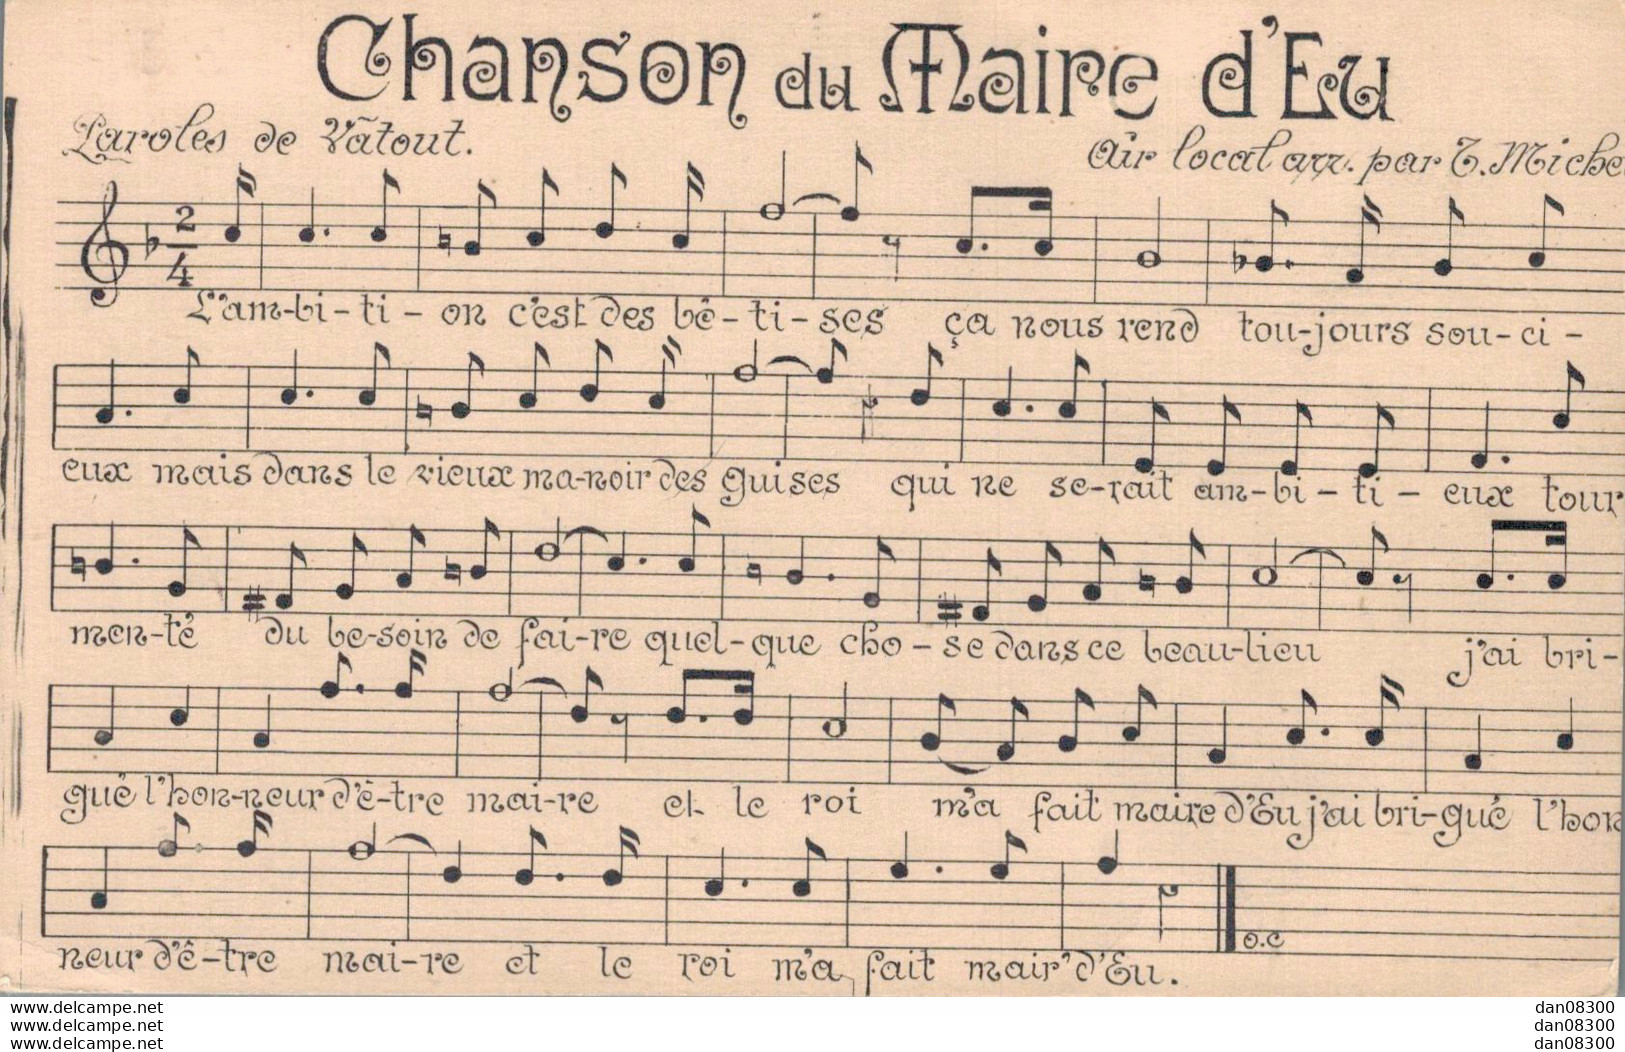 76 CHANSON DU MAIRE D'EU - Musik